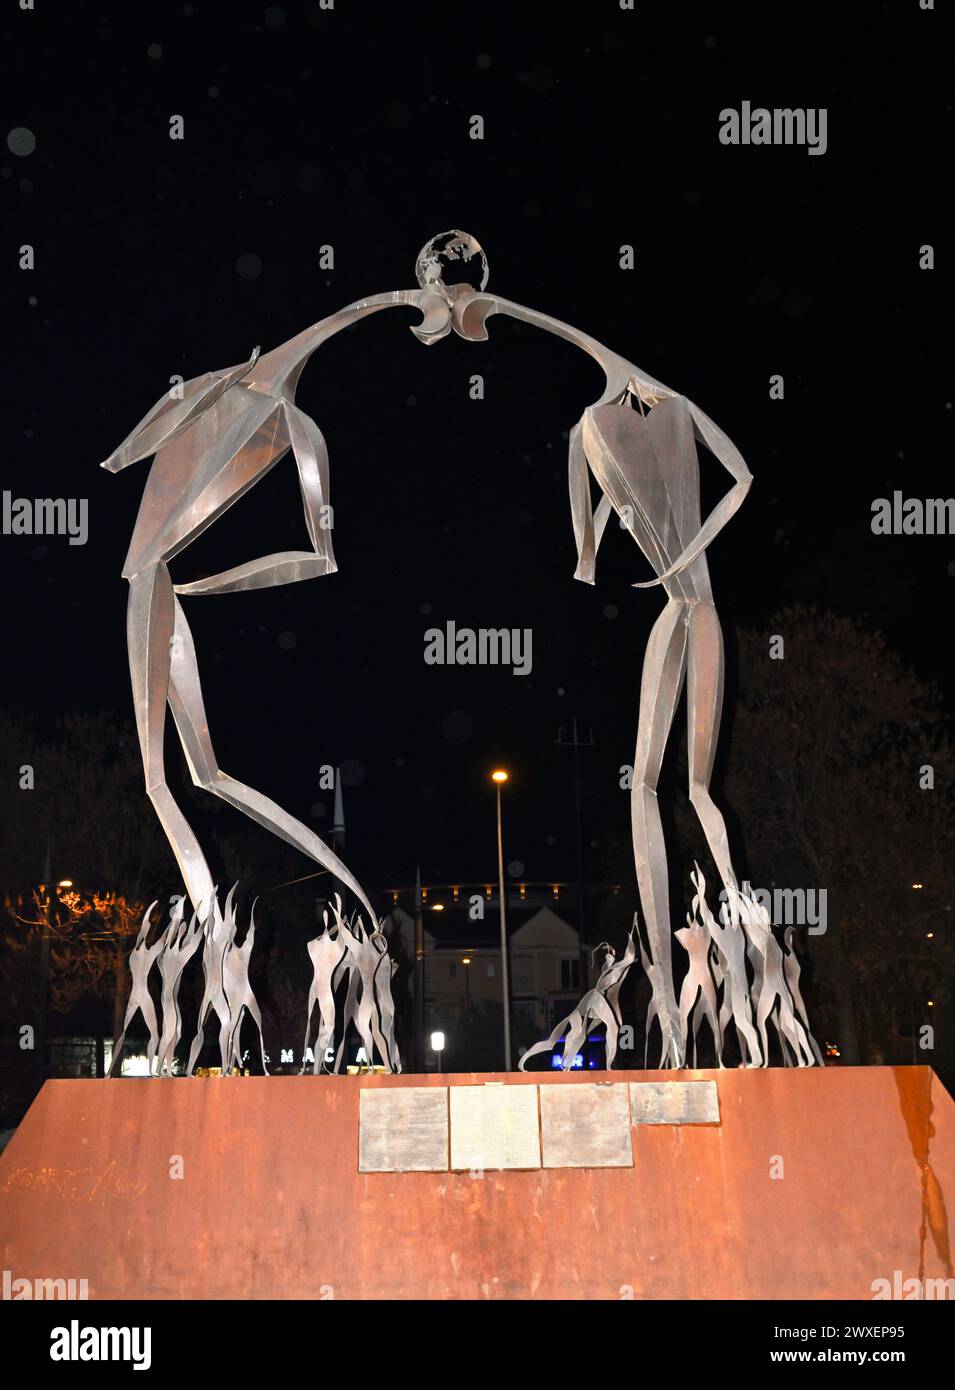 Escultura, monumento al fútbol “Monumento al Fútbol” en el parque y jardines del Paseo Emperador Carlos V por Miguel Ruiz Jiménez, Granada, España Foto de stock